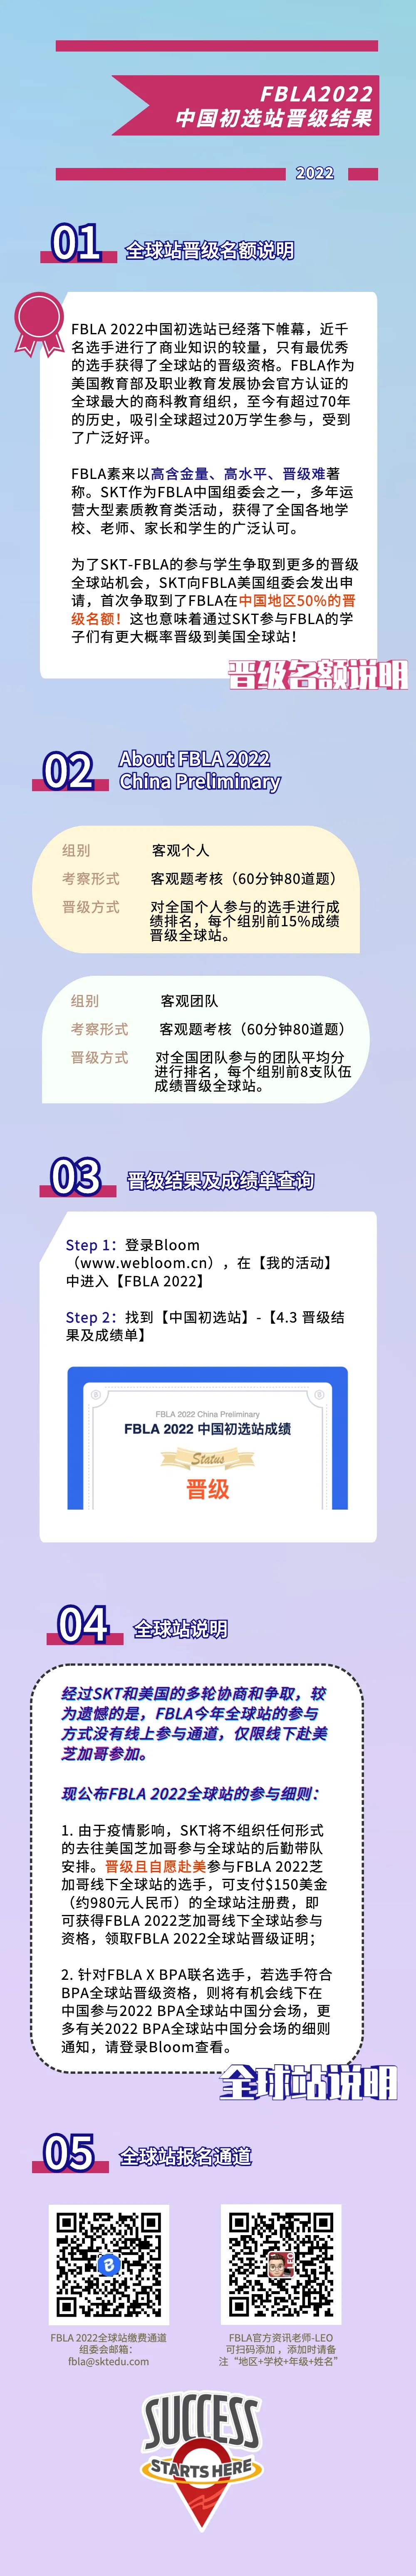 FBLA2022中国初选站晋级结果公布